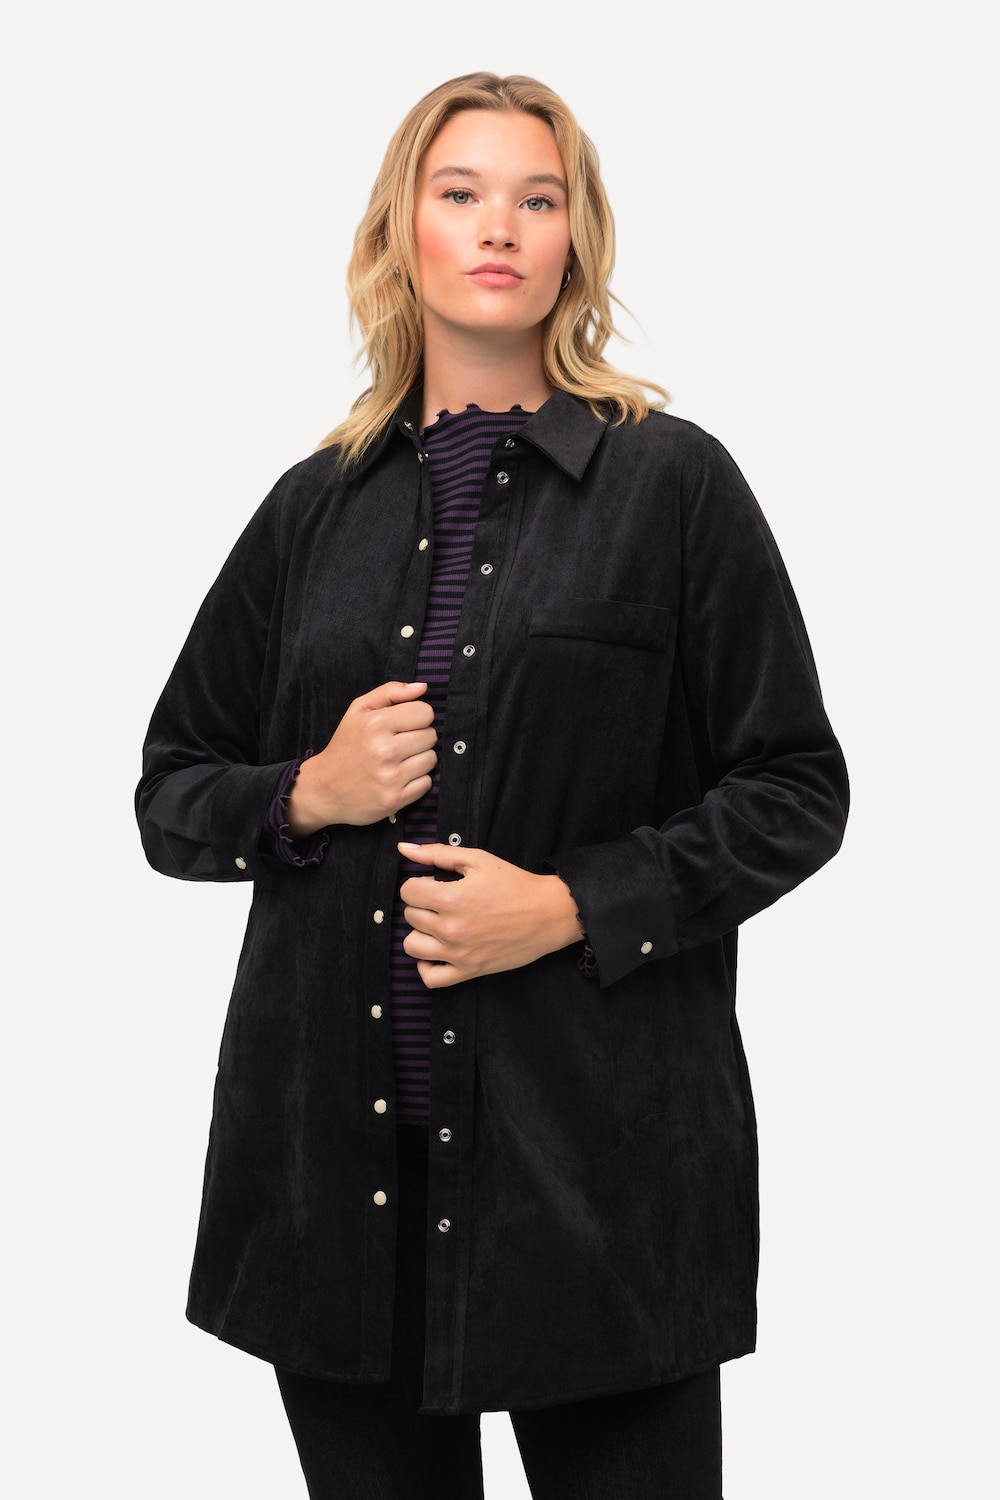 Grote Maten Corduroy blouse, Dames, zwart, Maat: 54/56, Polyester/Synthetische vezels, Ulla Popken